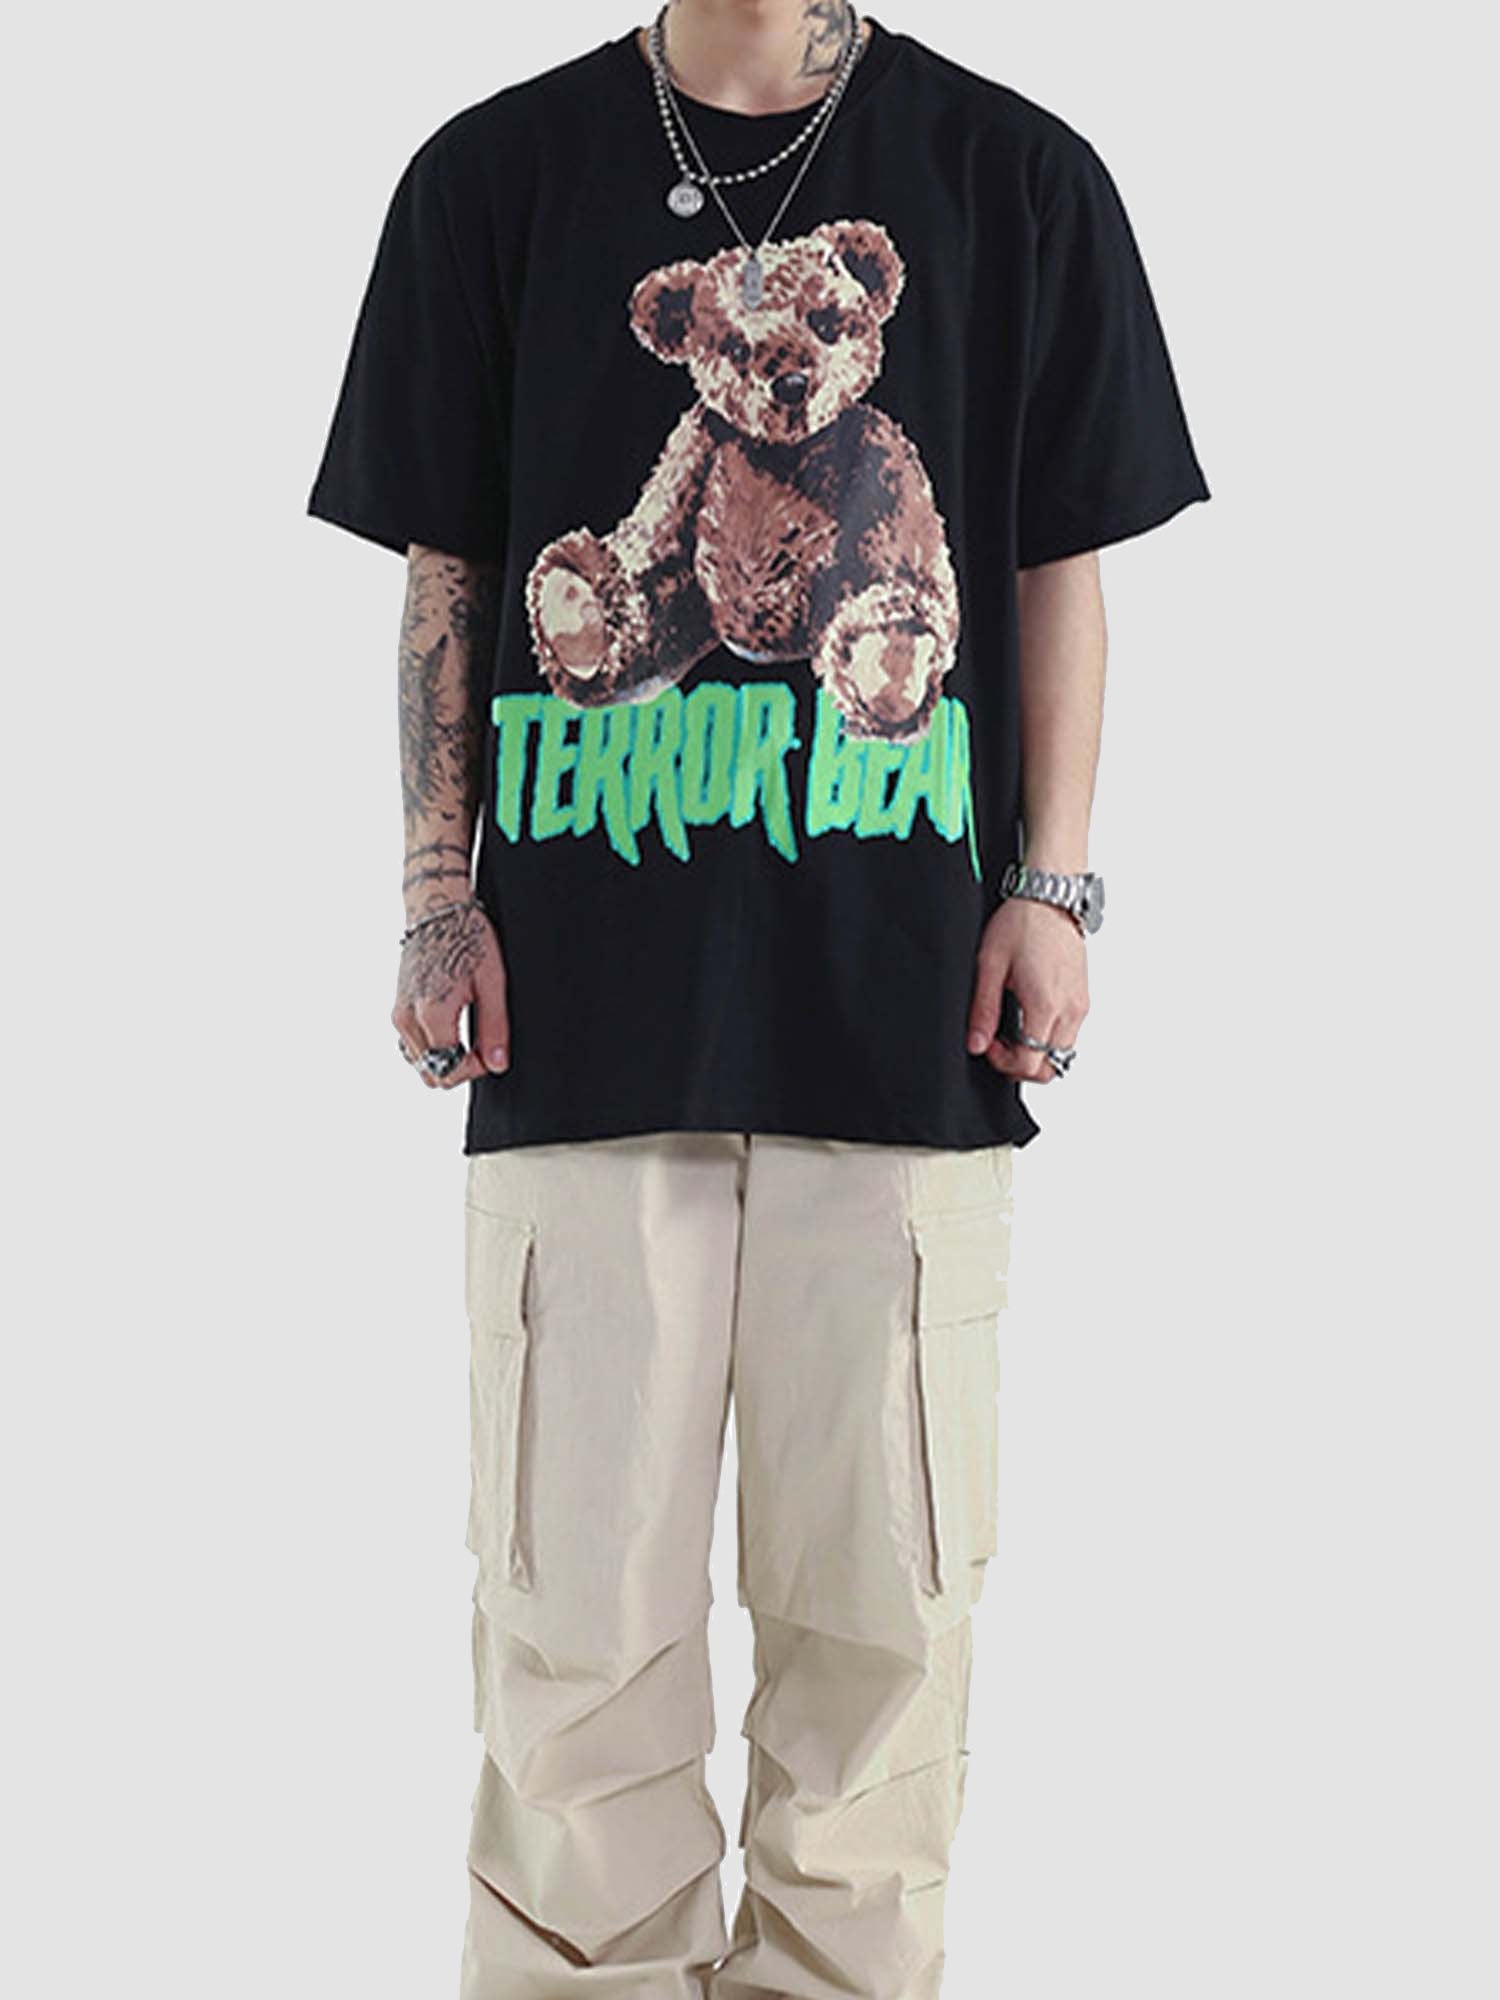 Justnotag Kurzarm-T-Shirt aus Baumwolle mit kleinem Bärendruck